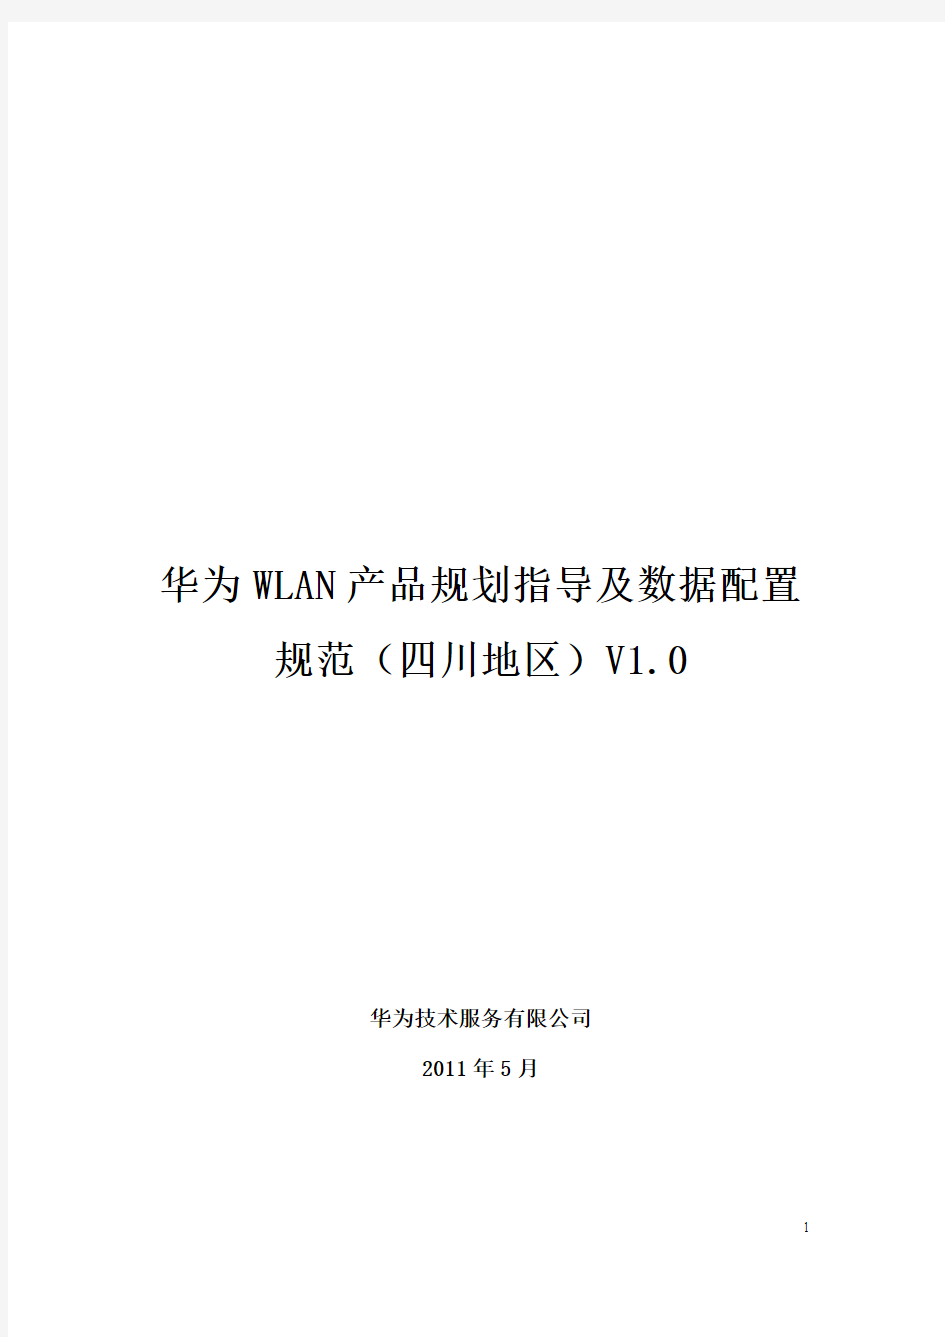 华为WLAN产品规划指导及数据配置规范(四川地区模版)V1.0-20110519-C